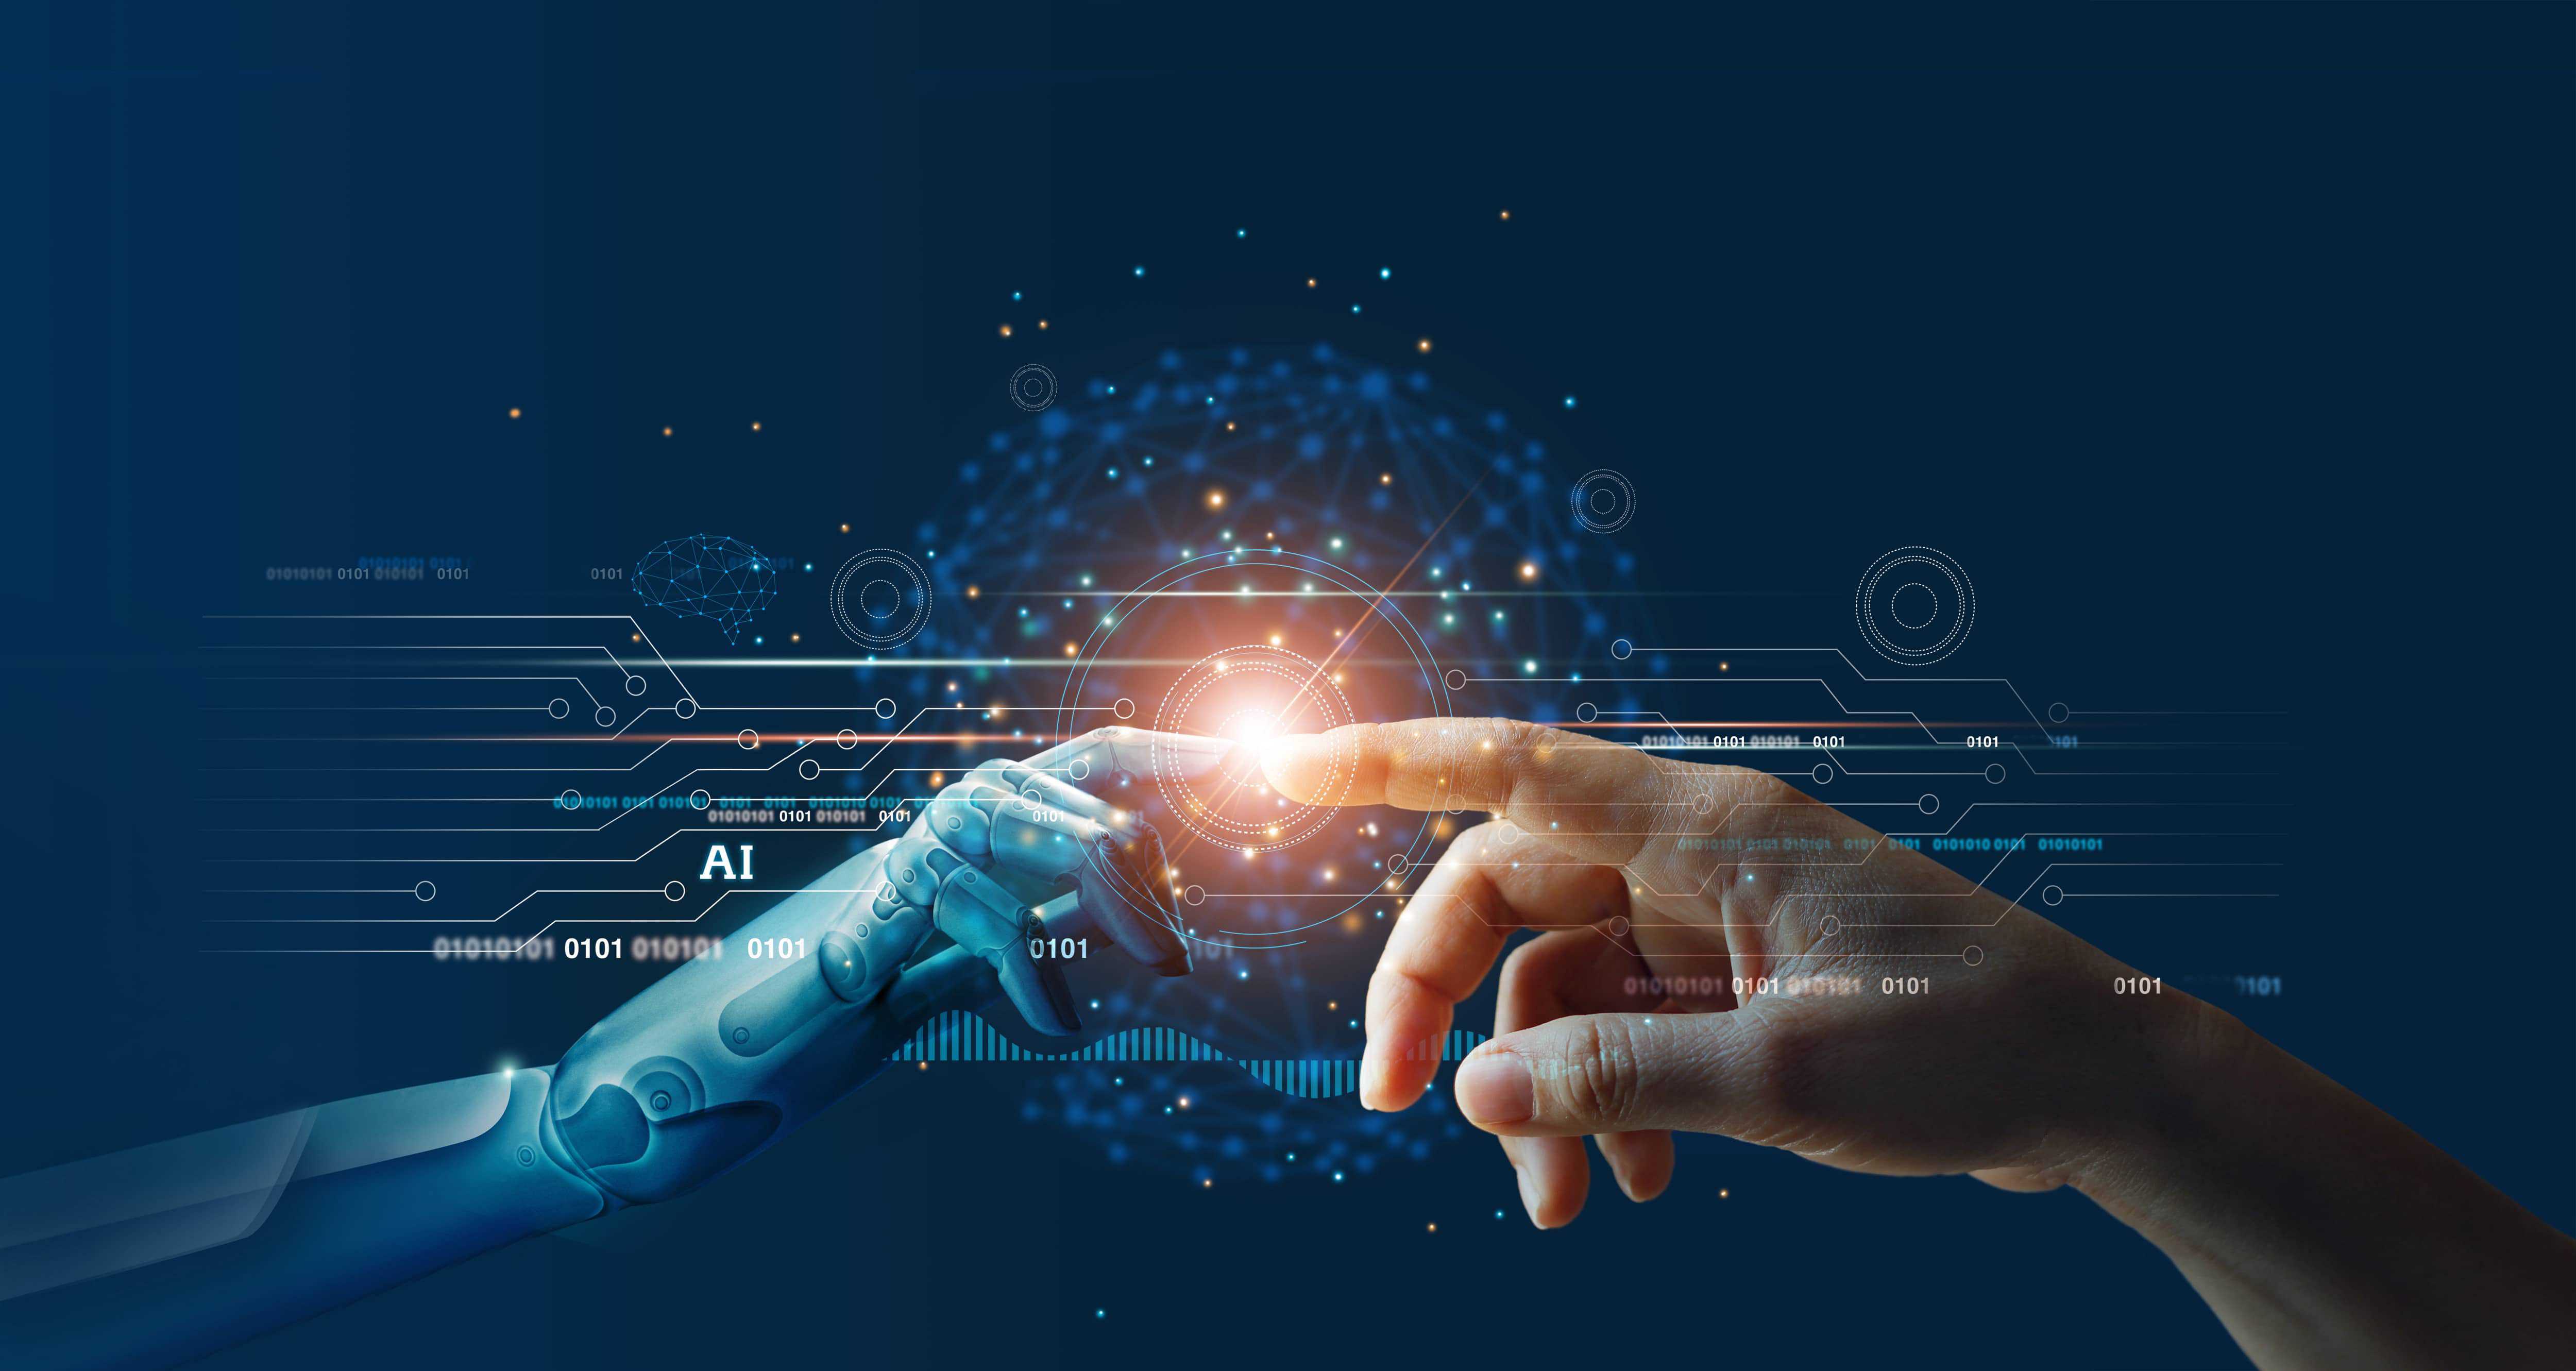 inteligencia artificial combinada con las habilidades humanas generarán nuevas oportunidades para la humanidad